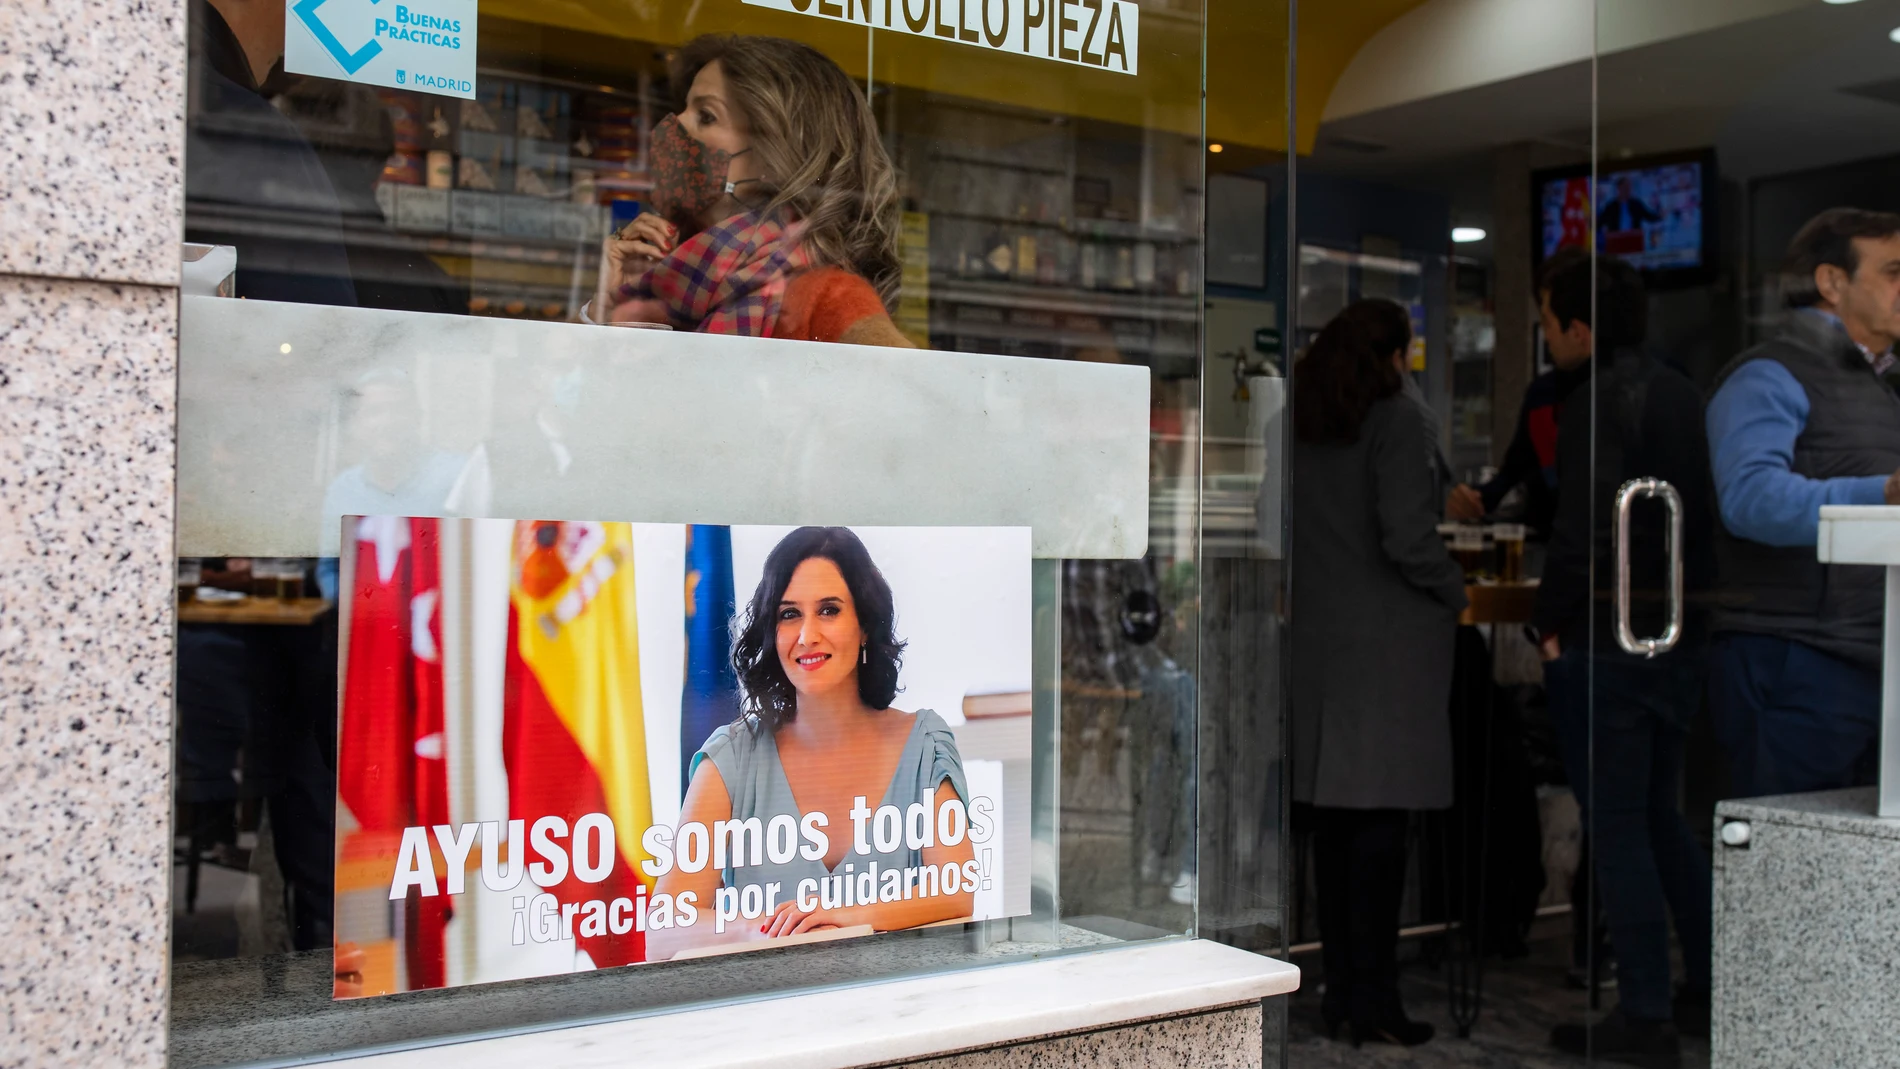 Carteles de apoyo a la presidenta Ayuso, por su defensa de la hostelería en Madrid por la zona de la calle Ponzano.